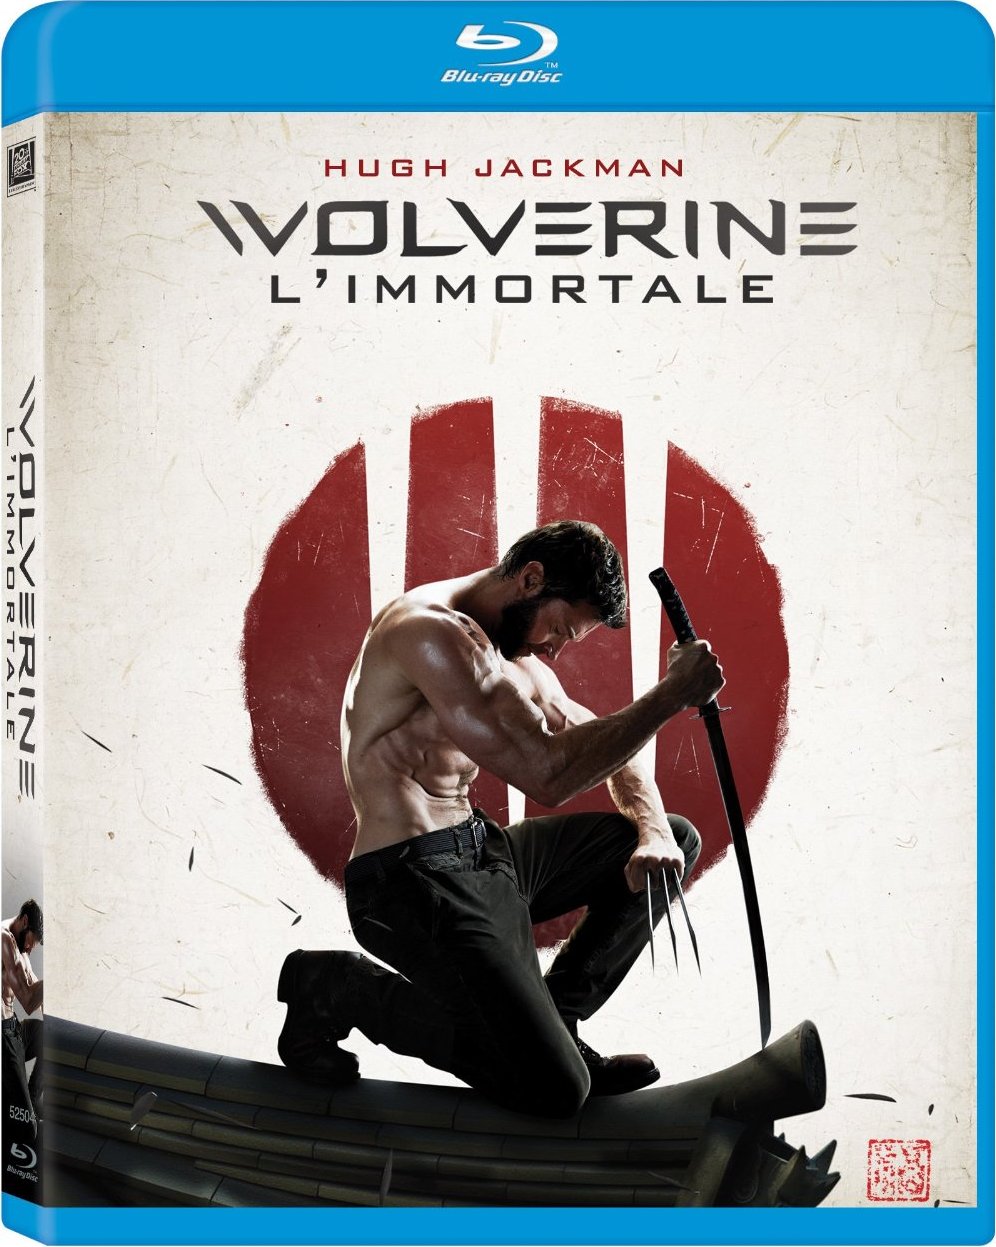 [金刚狼2].The.Wolverine.2013.3D.TW.BluRay.1080p.AVC.DTS-HD.MA.7.1-OMEGA    46.33G3 n, c6 W& S1 Y-1.jpg